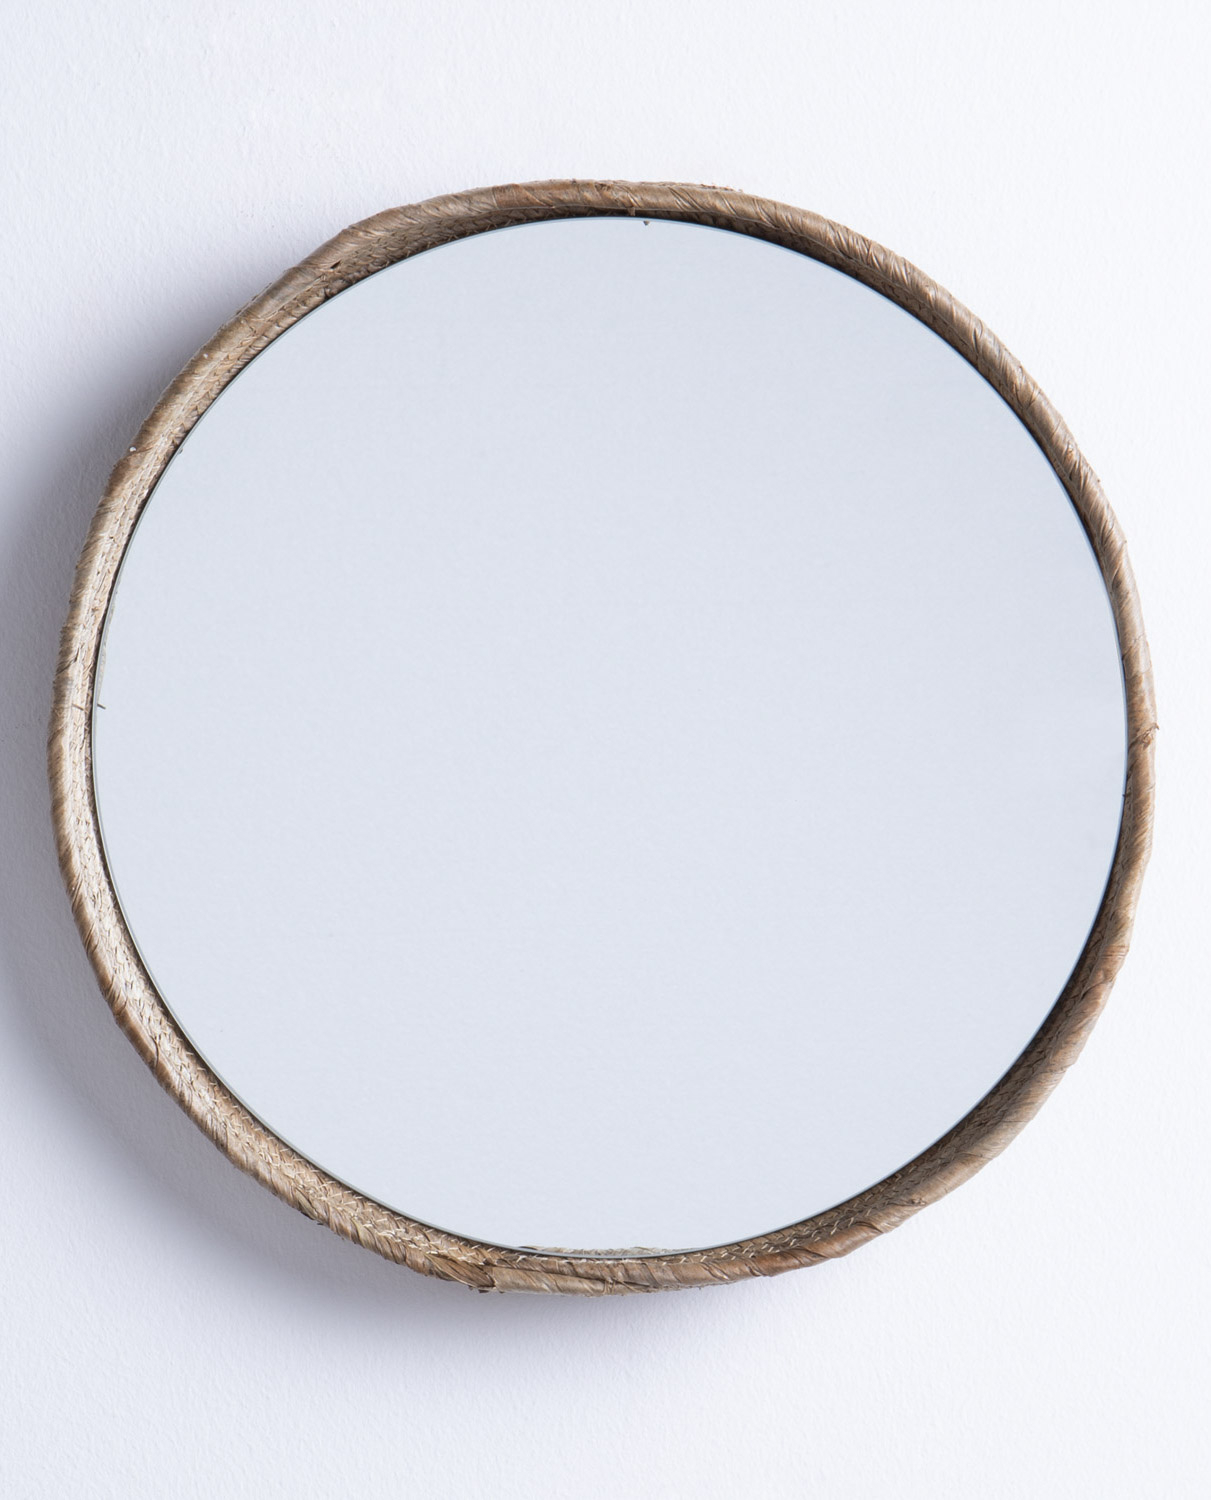 Specchio da Parete Rotondo in Legno (Ø40 cm) Banli, immagine della galleria 1